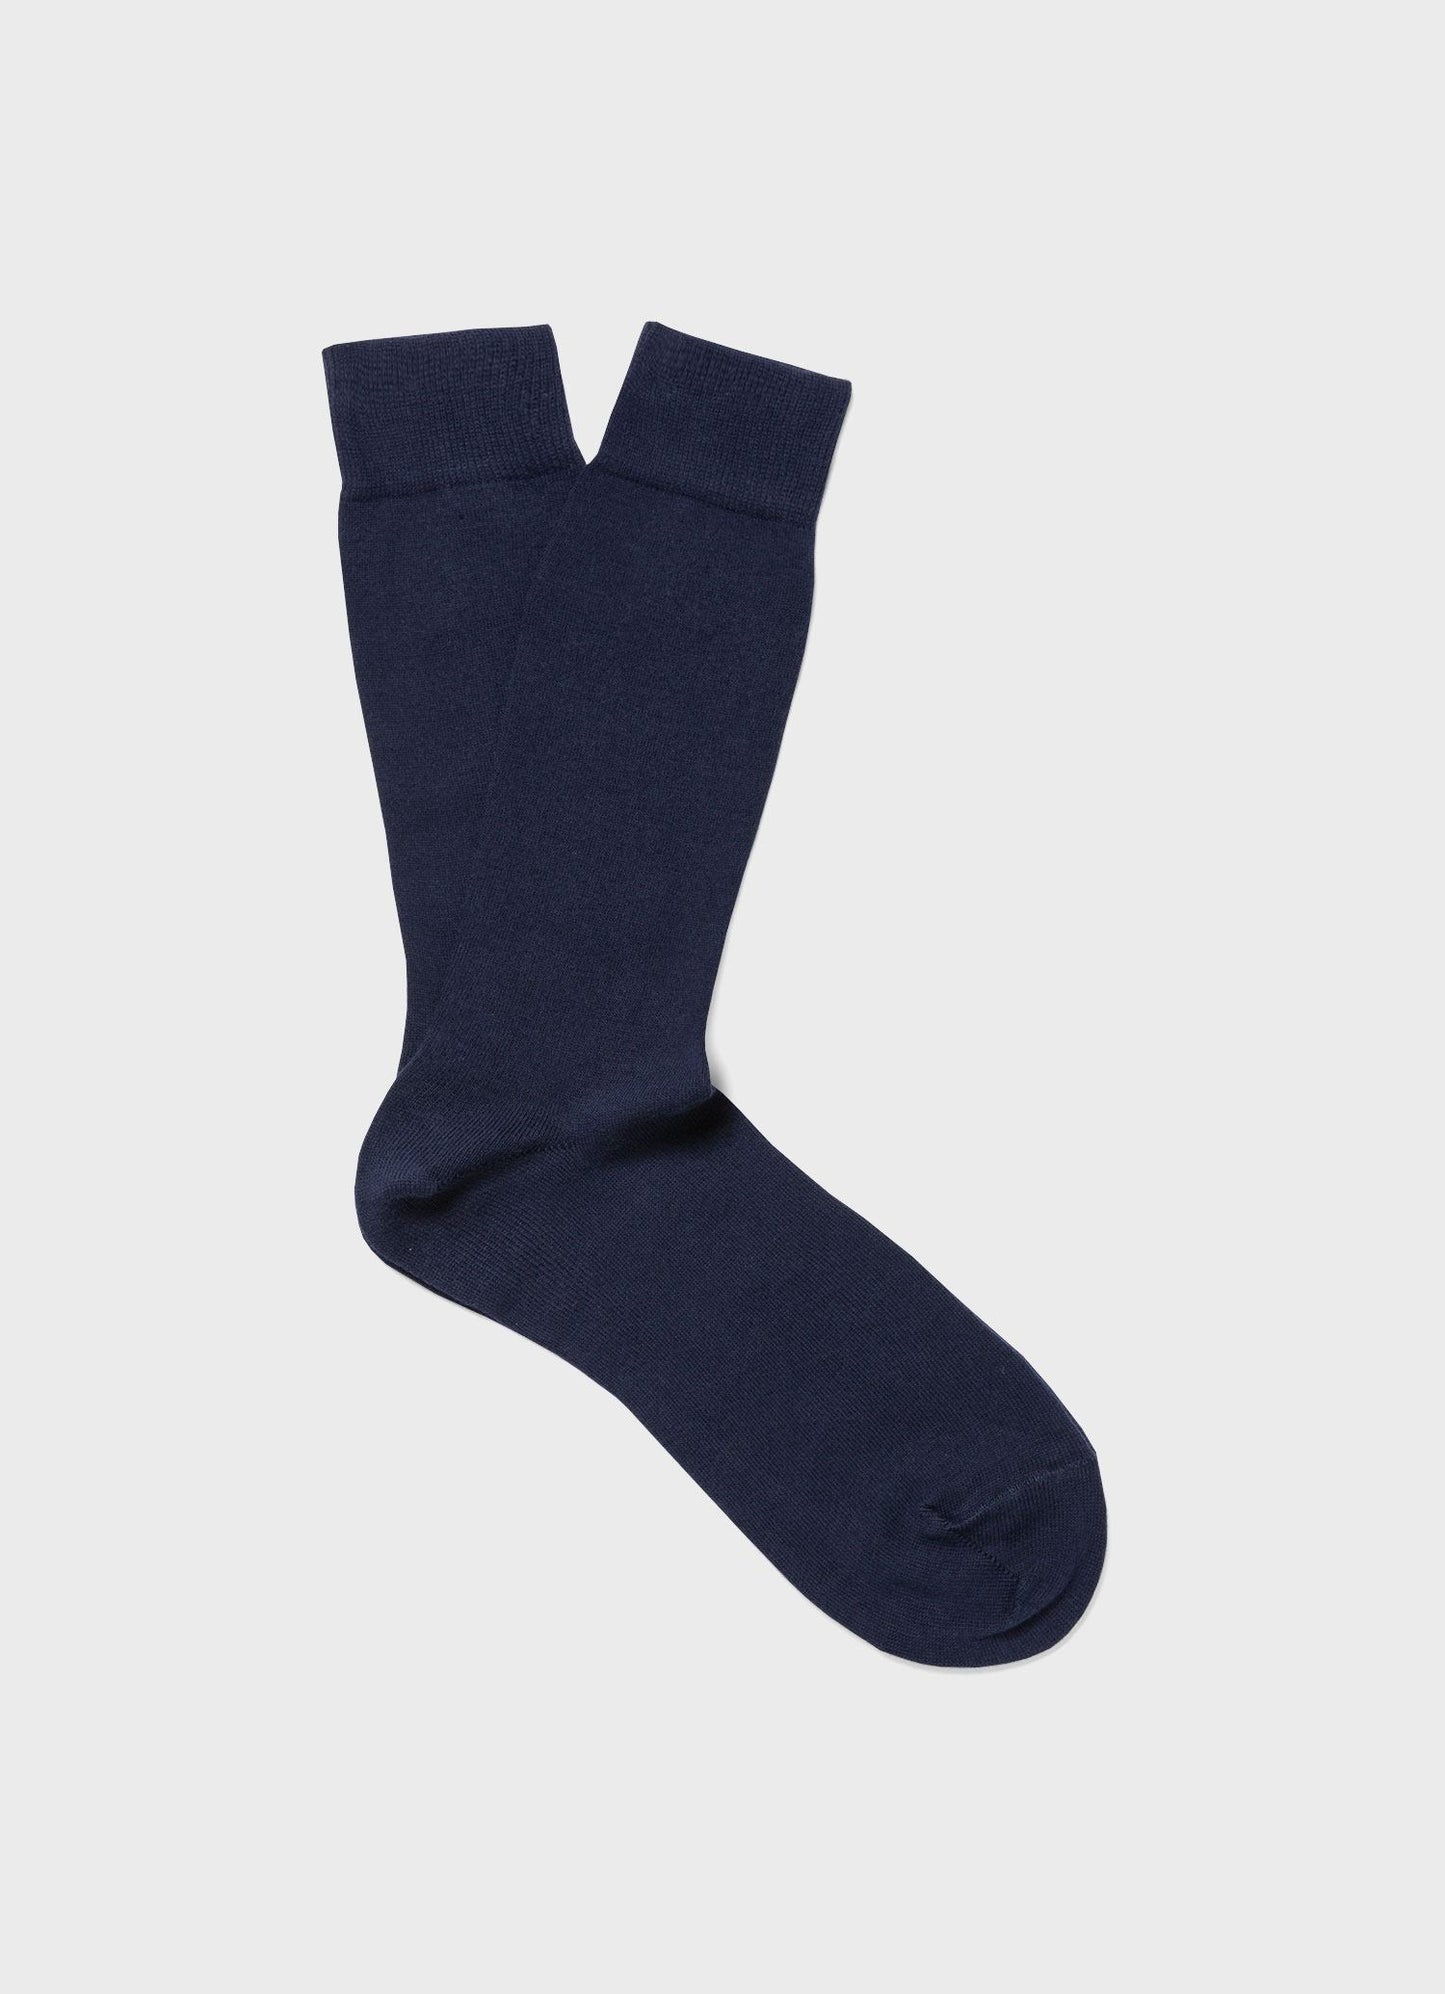 Long Staple Navy Cotton Socks